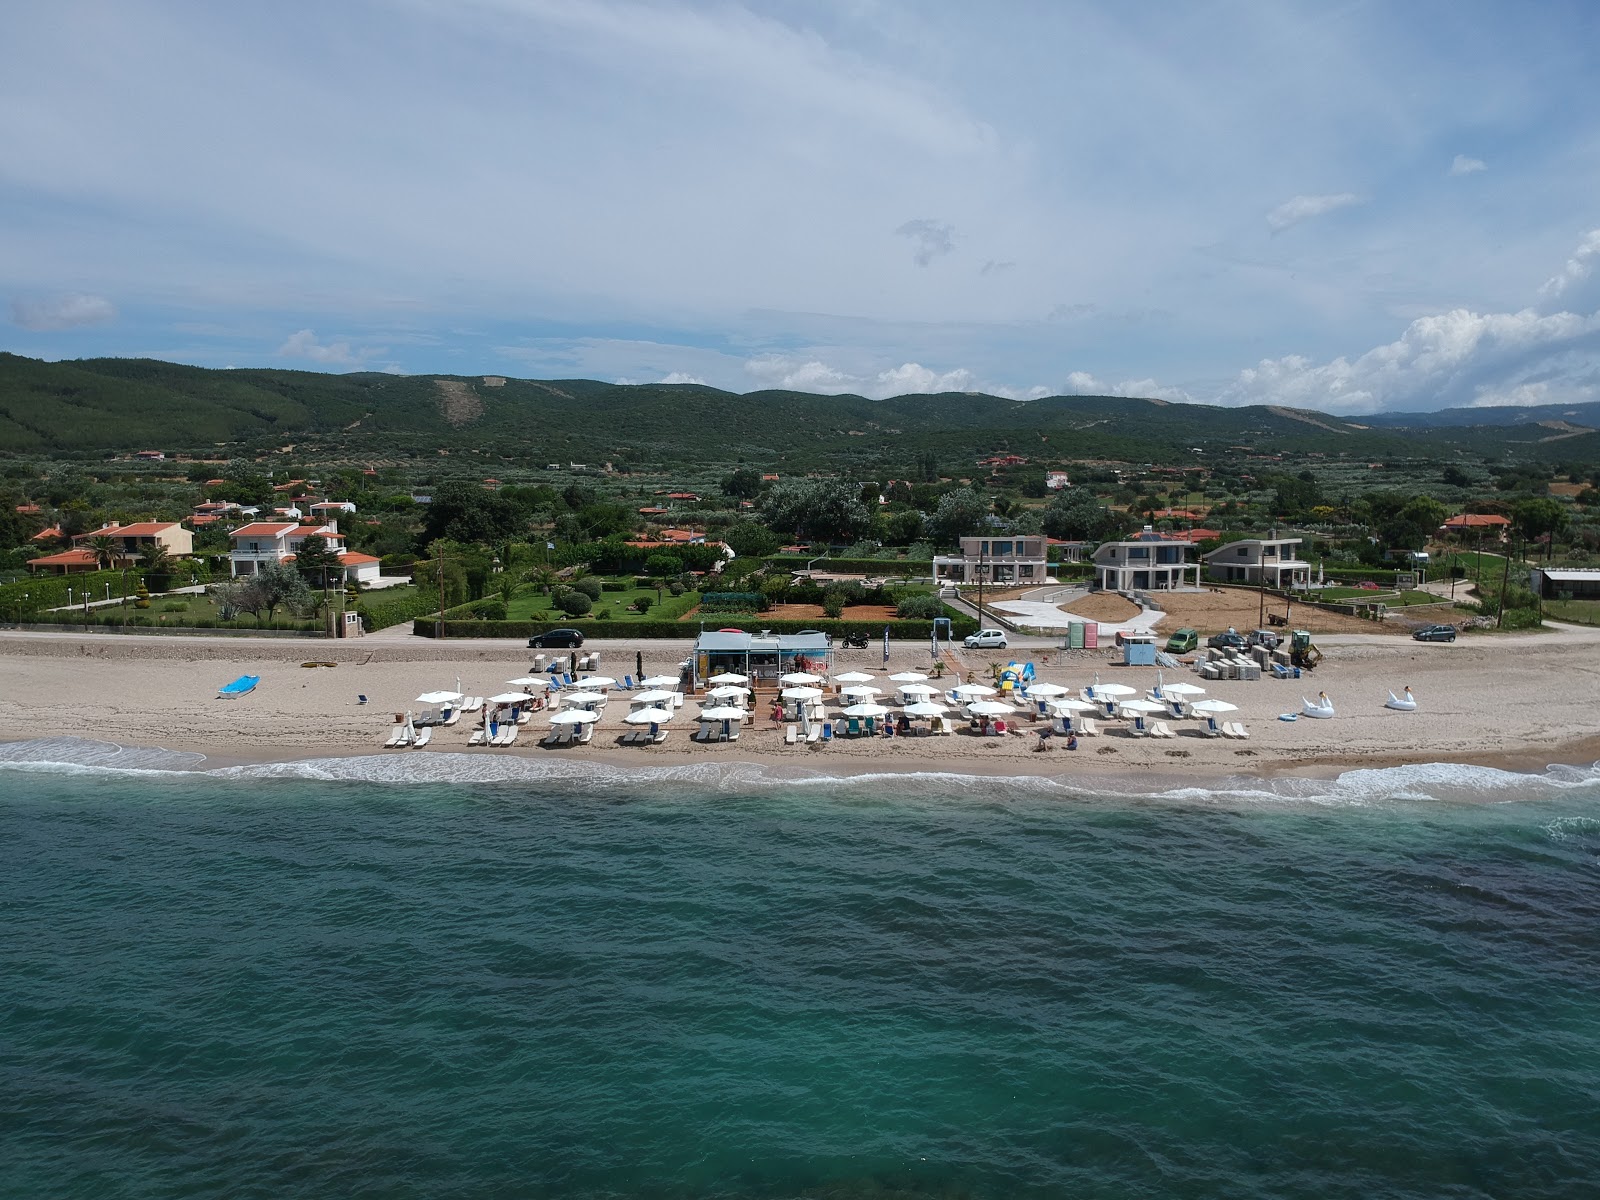 Photo of Mesimvrias beach beach resort area